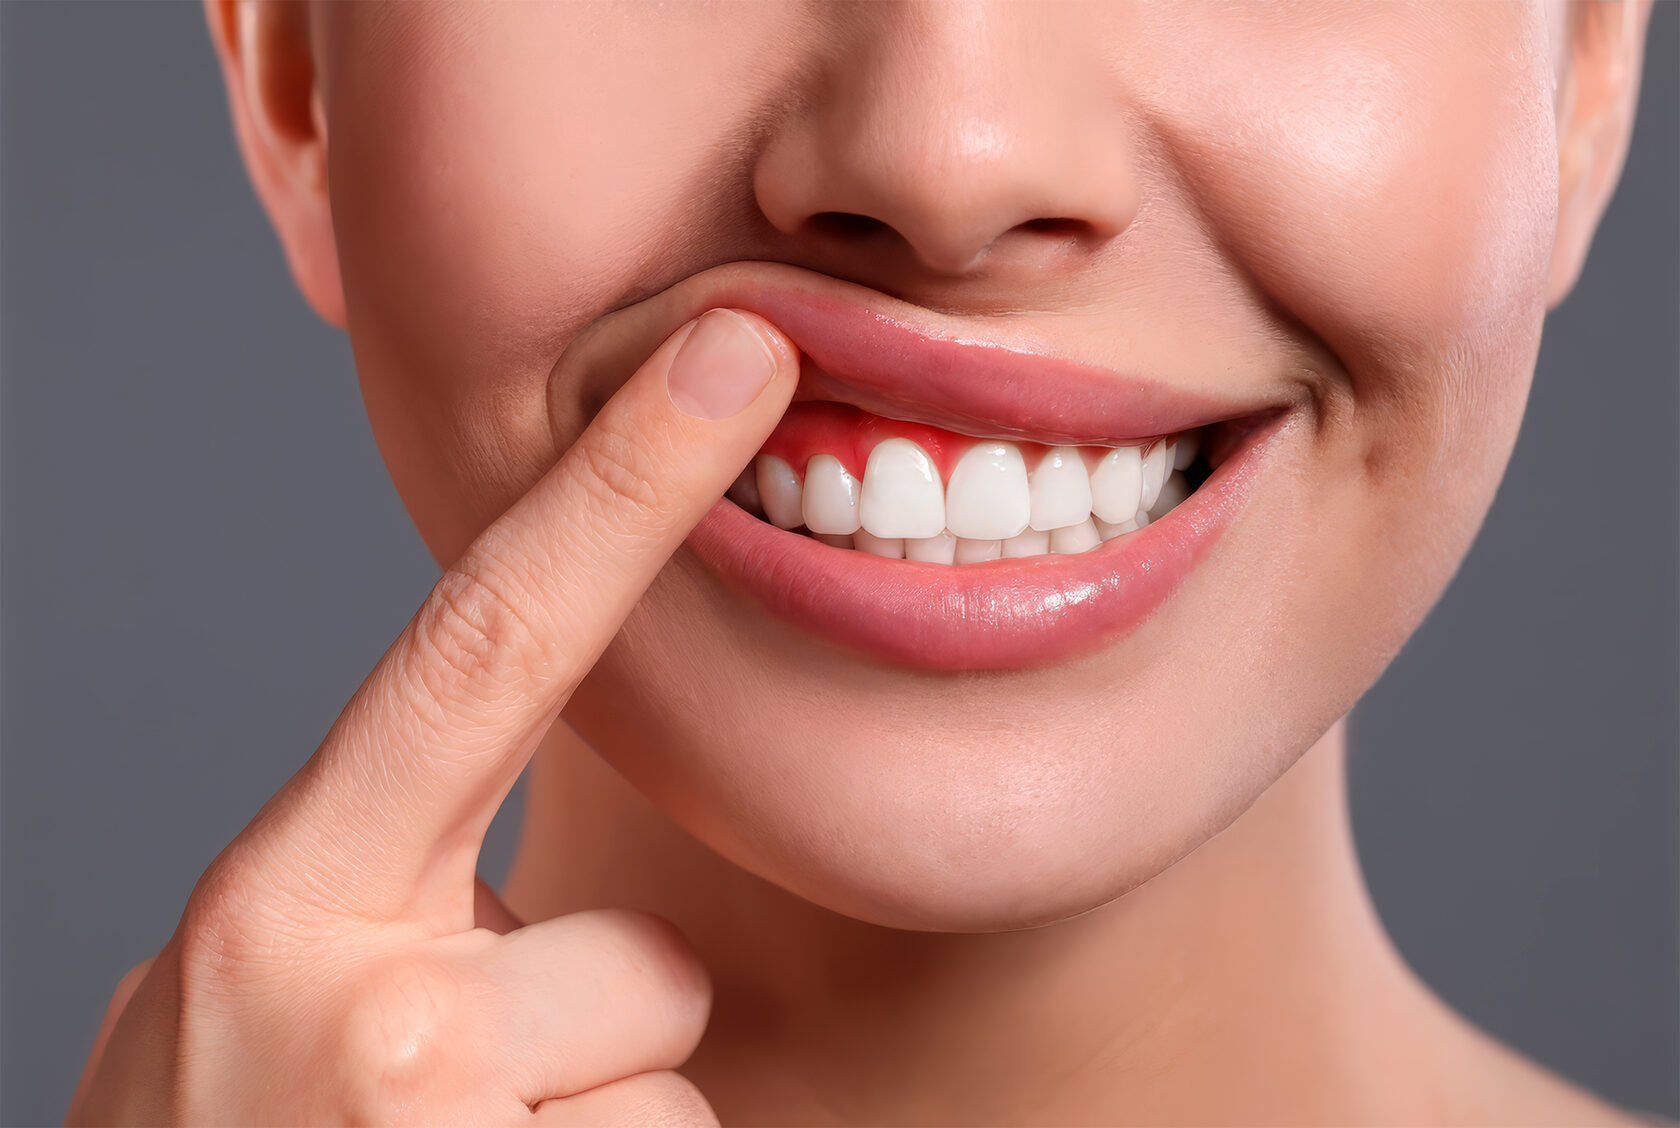 Оголение корней зубов – не только эстетический дефект